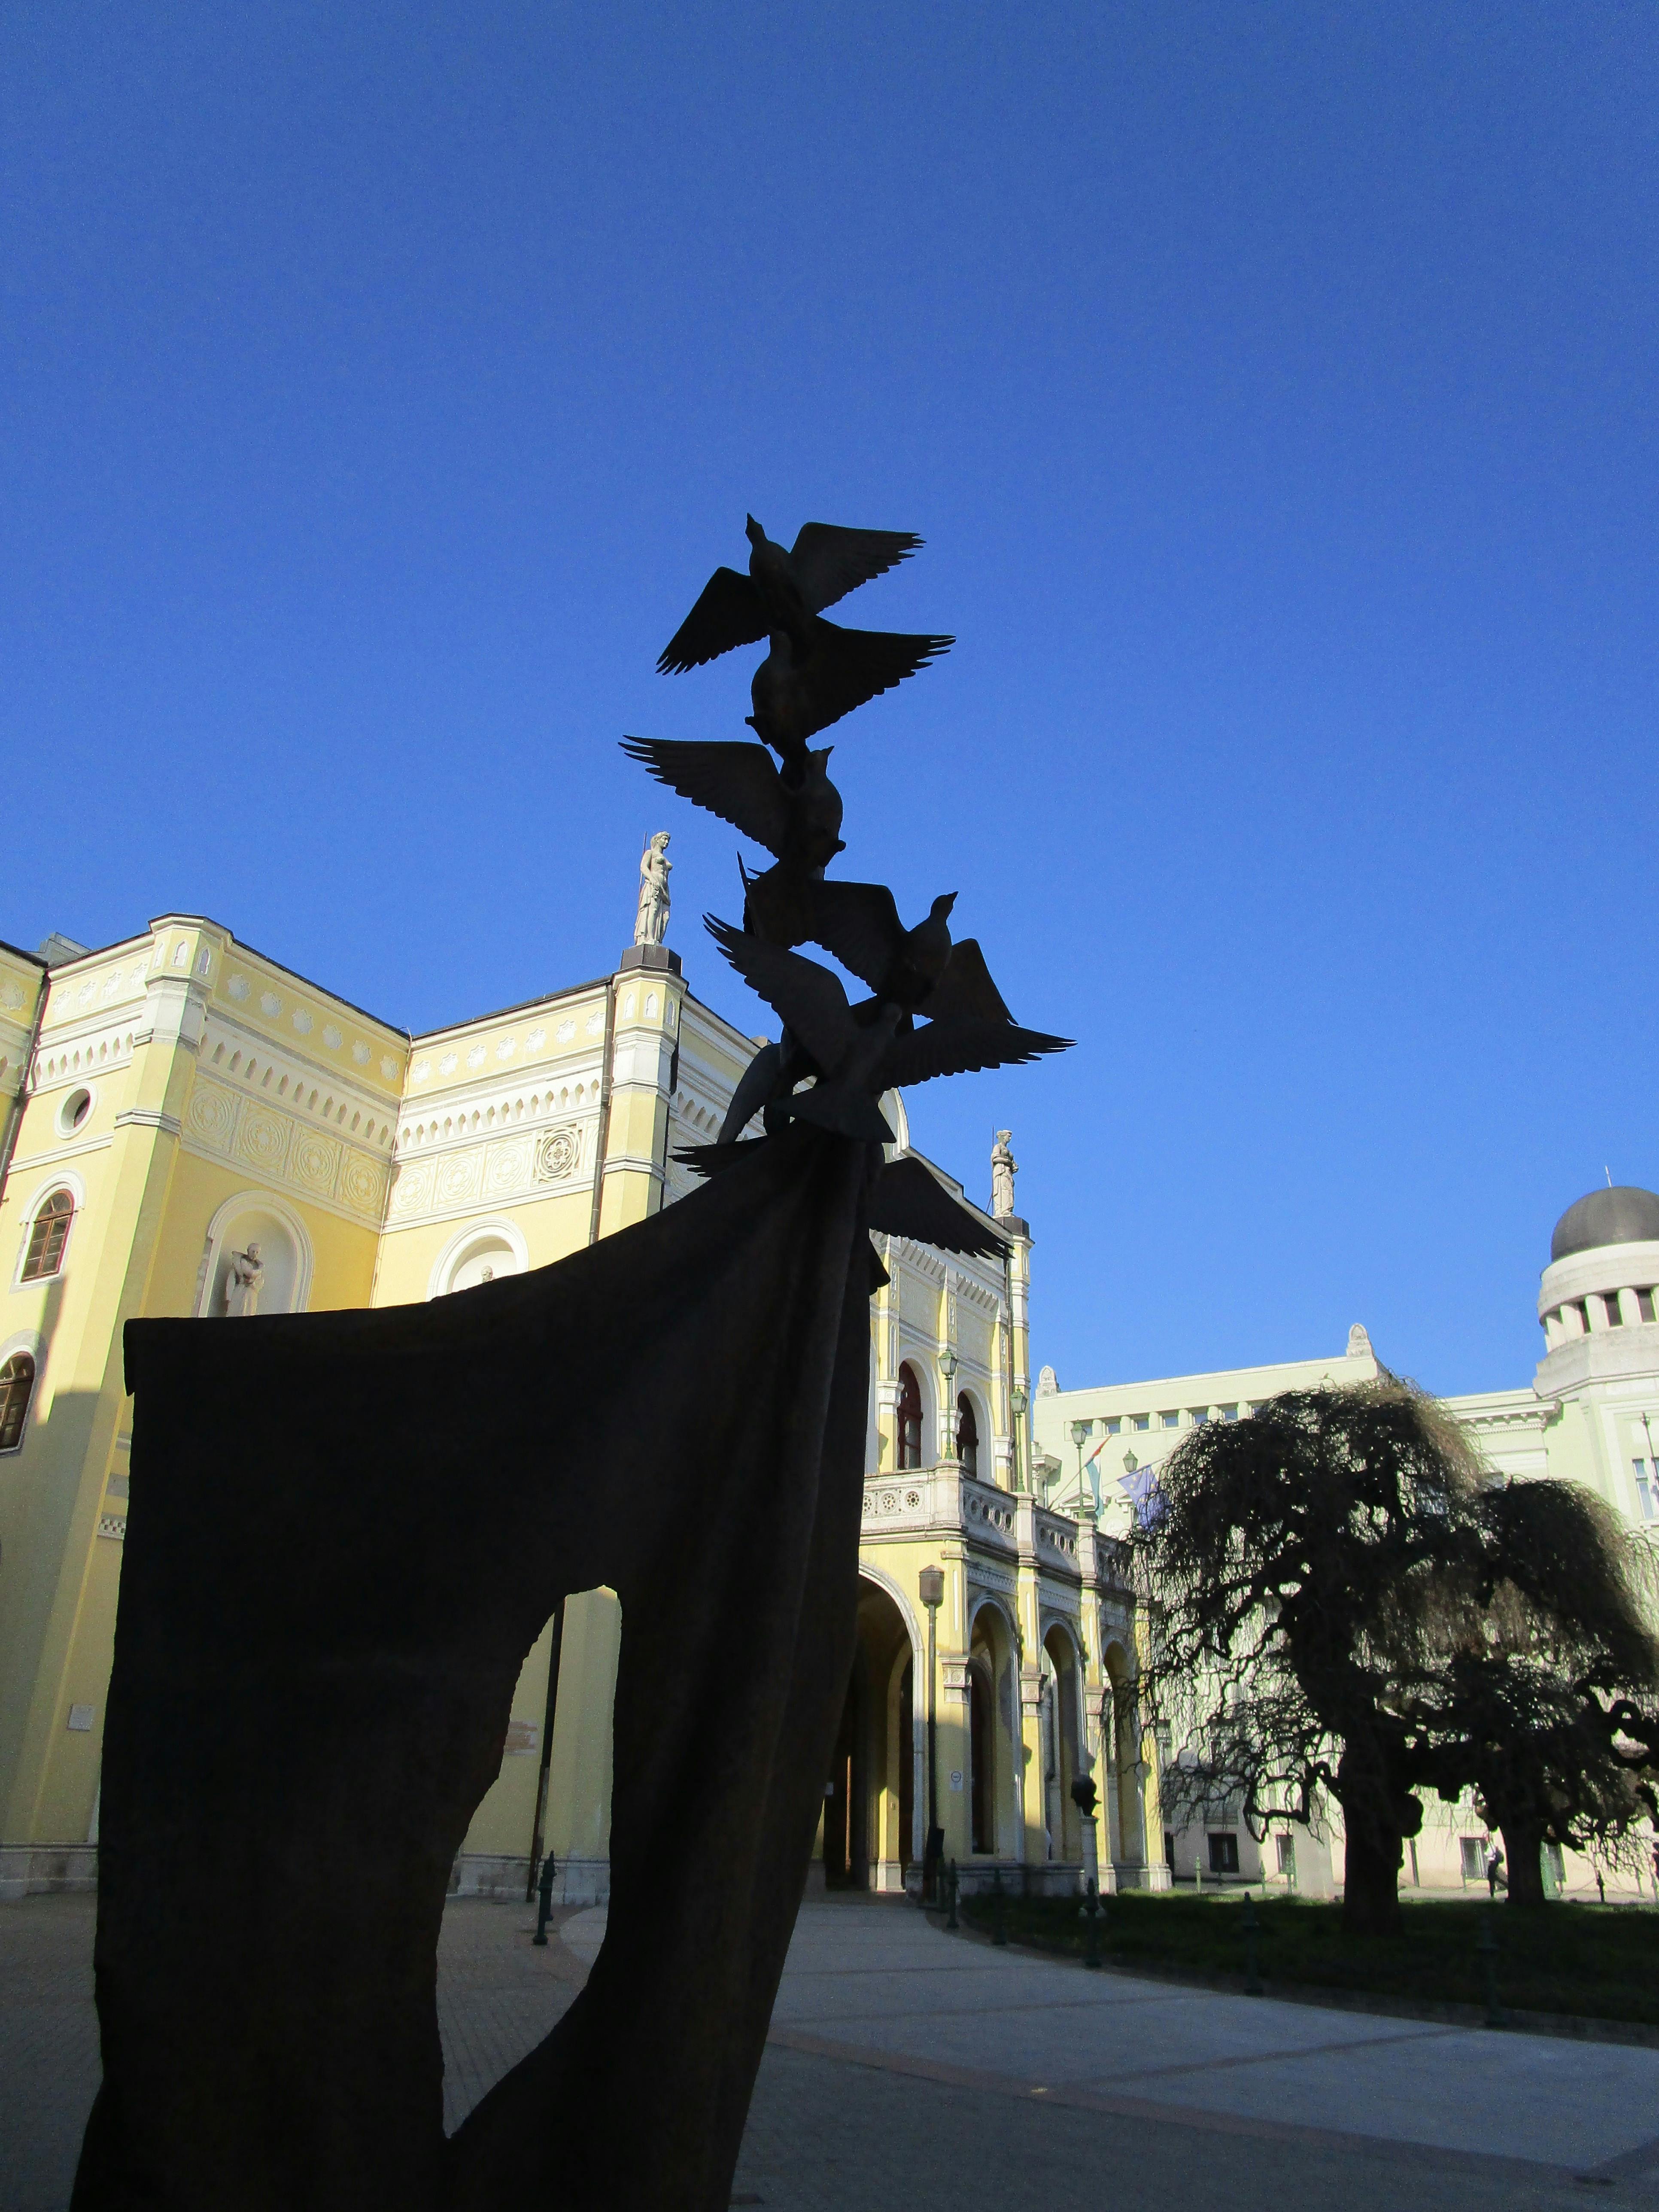 Free stock photo of birds of freedom - memorial sculpture in Debrecen